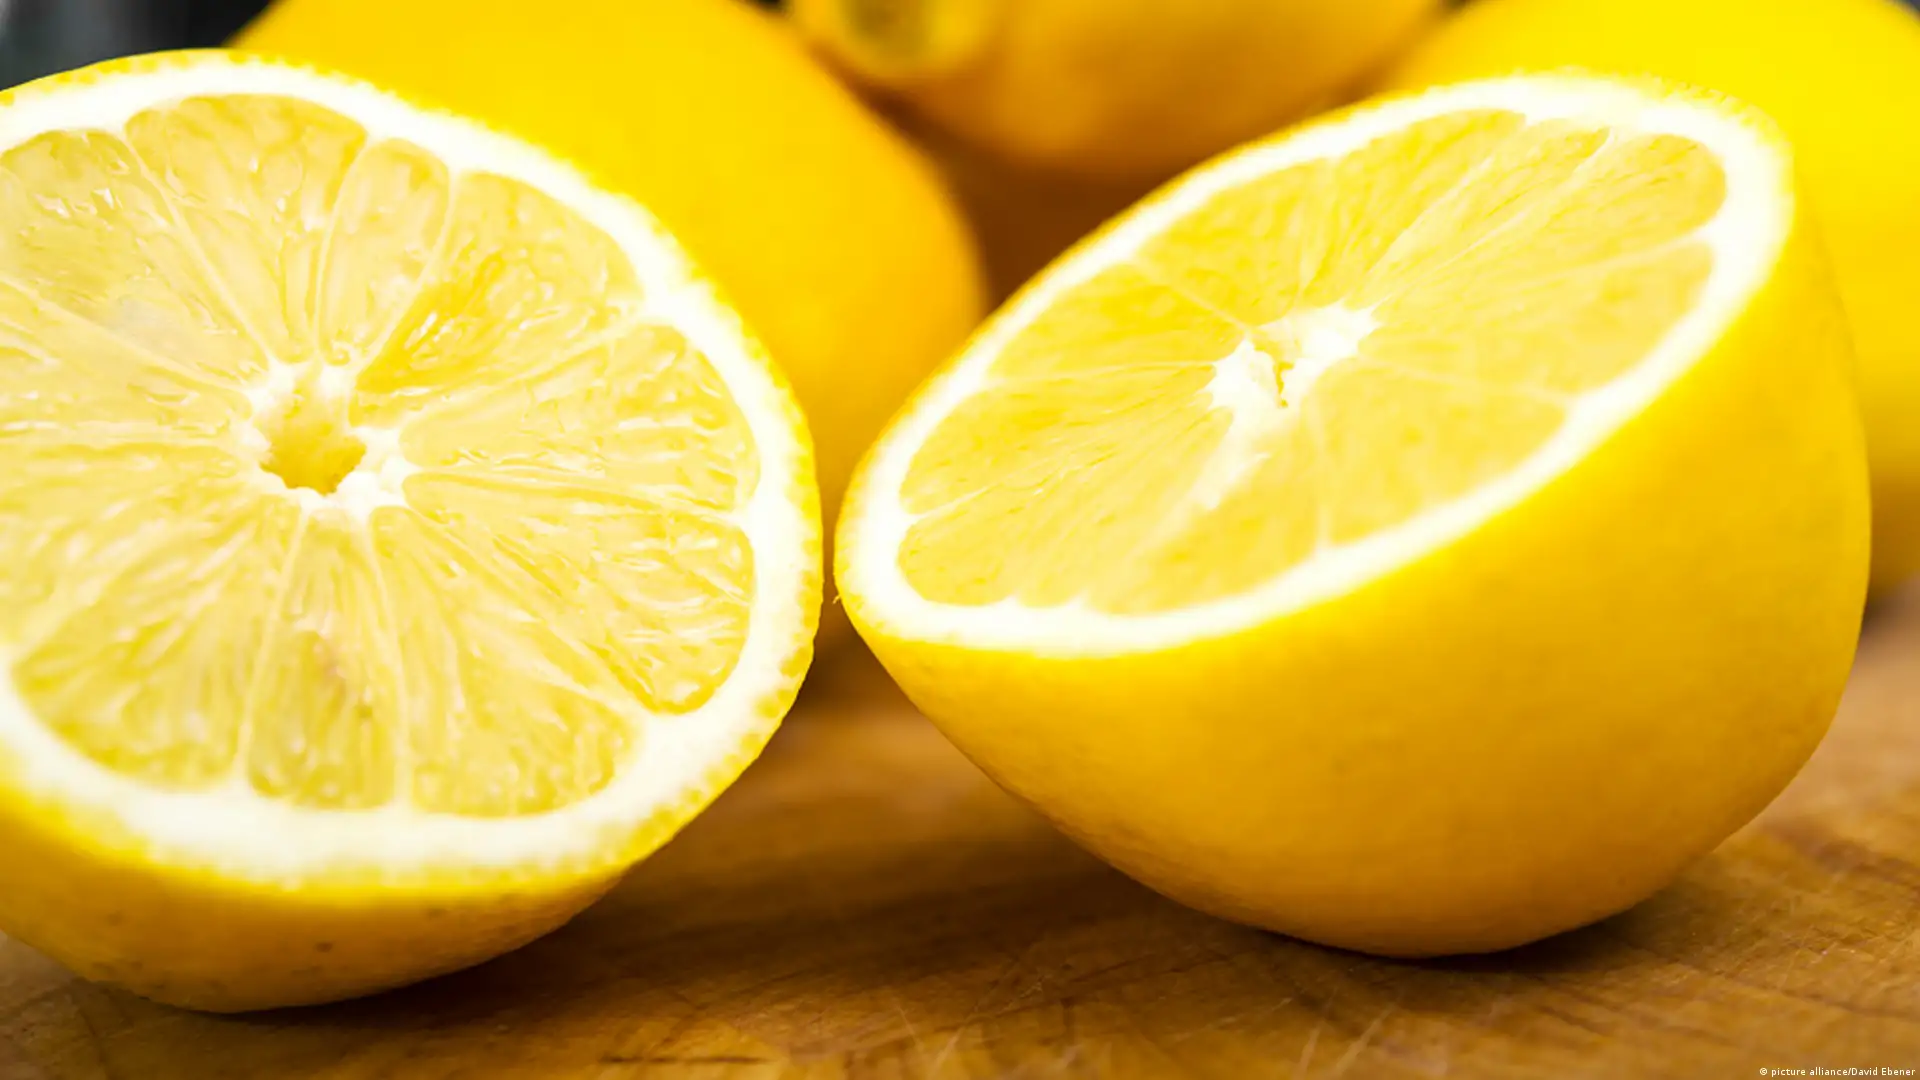 فائدة الليمون للجسم وعلاج الإمساك وموازنة الحموضة في الجسم